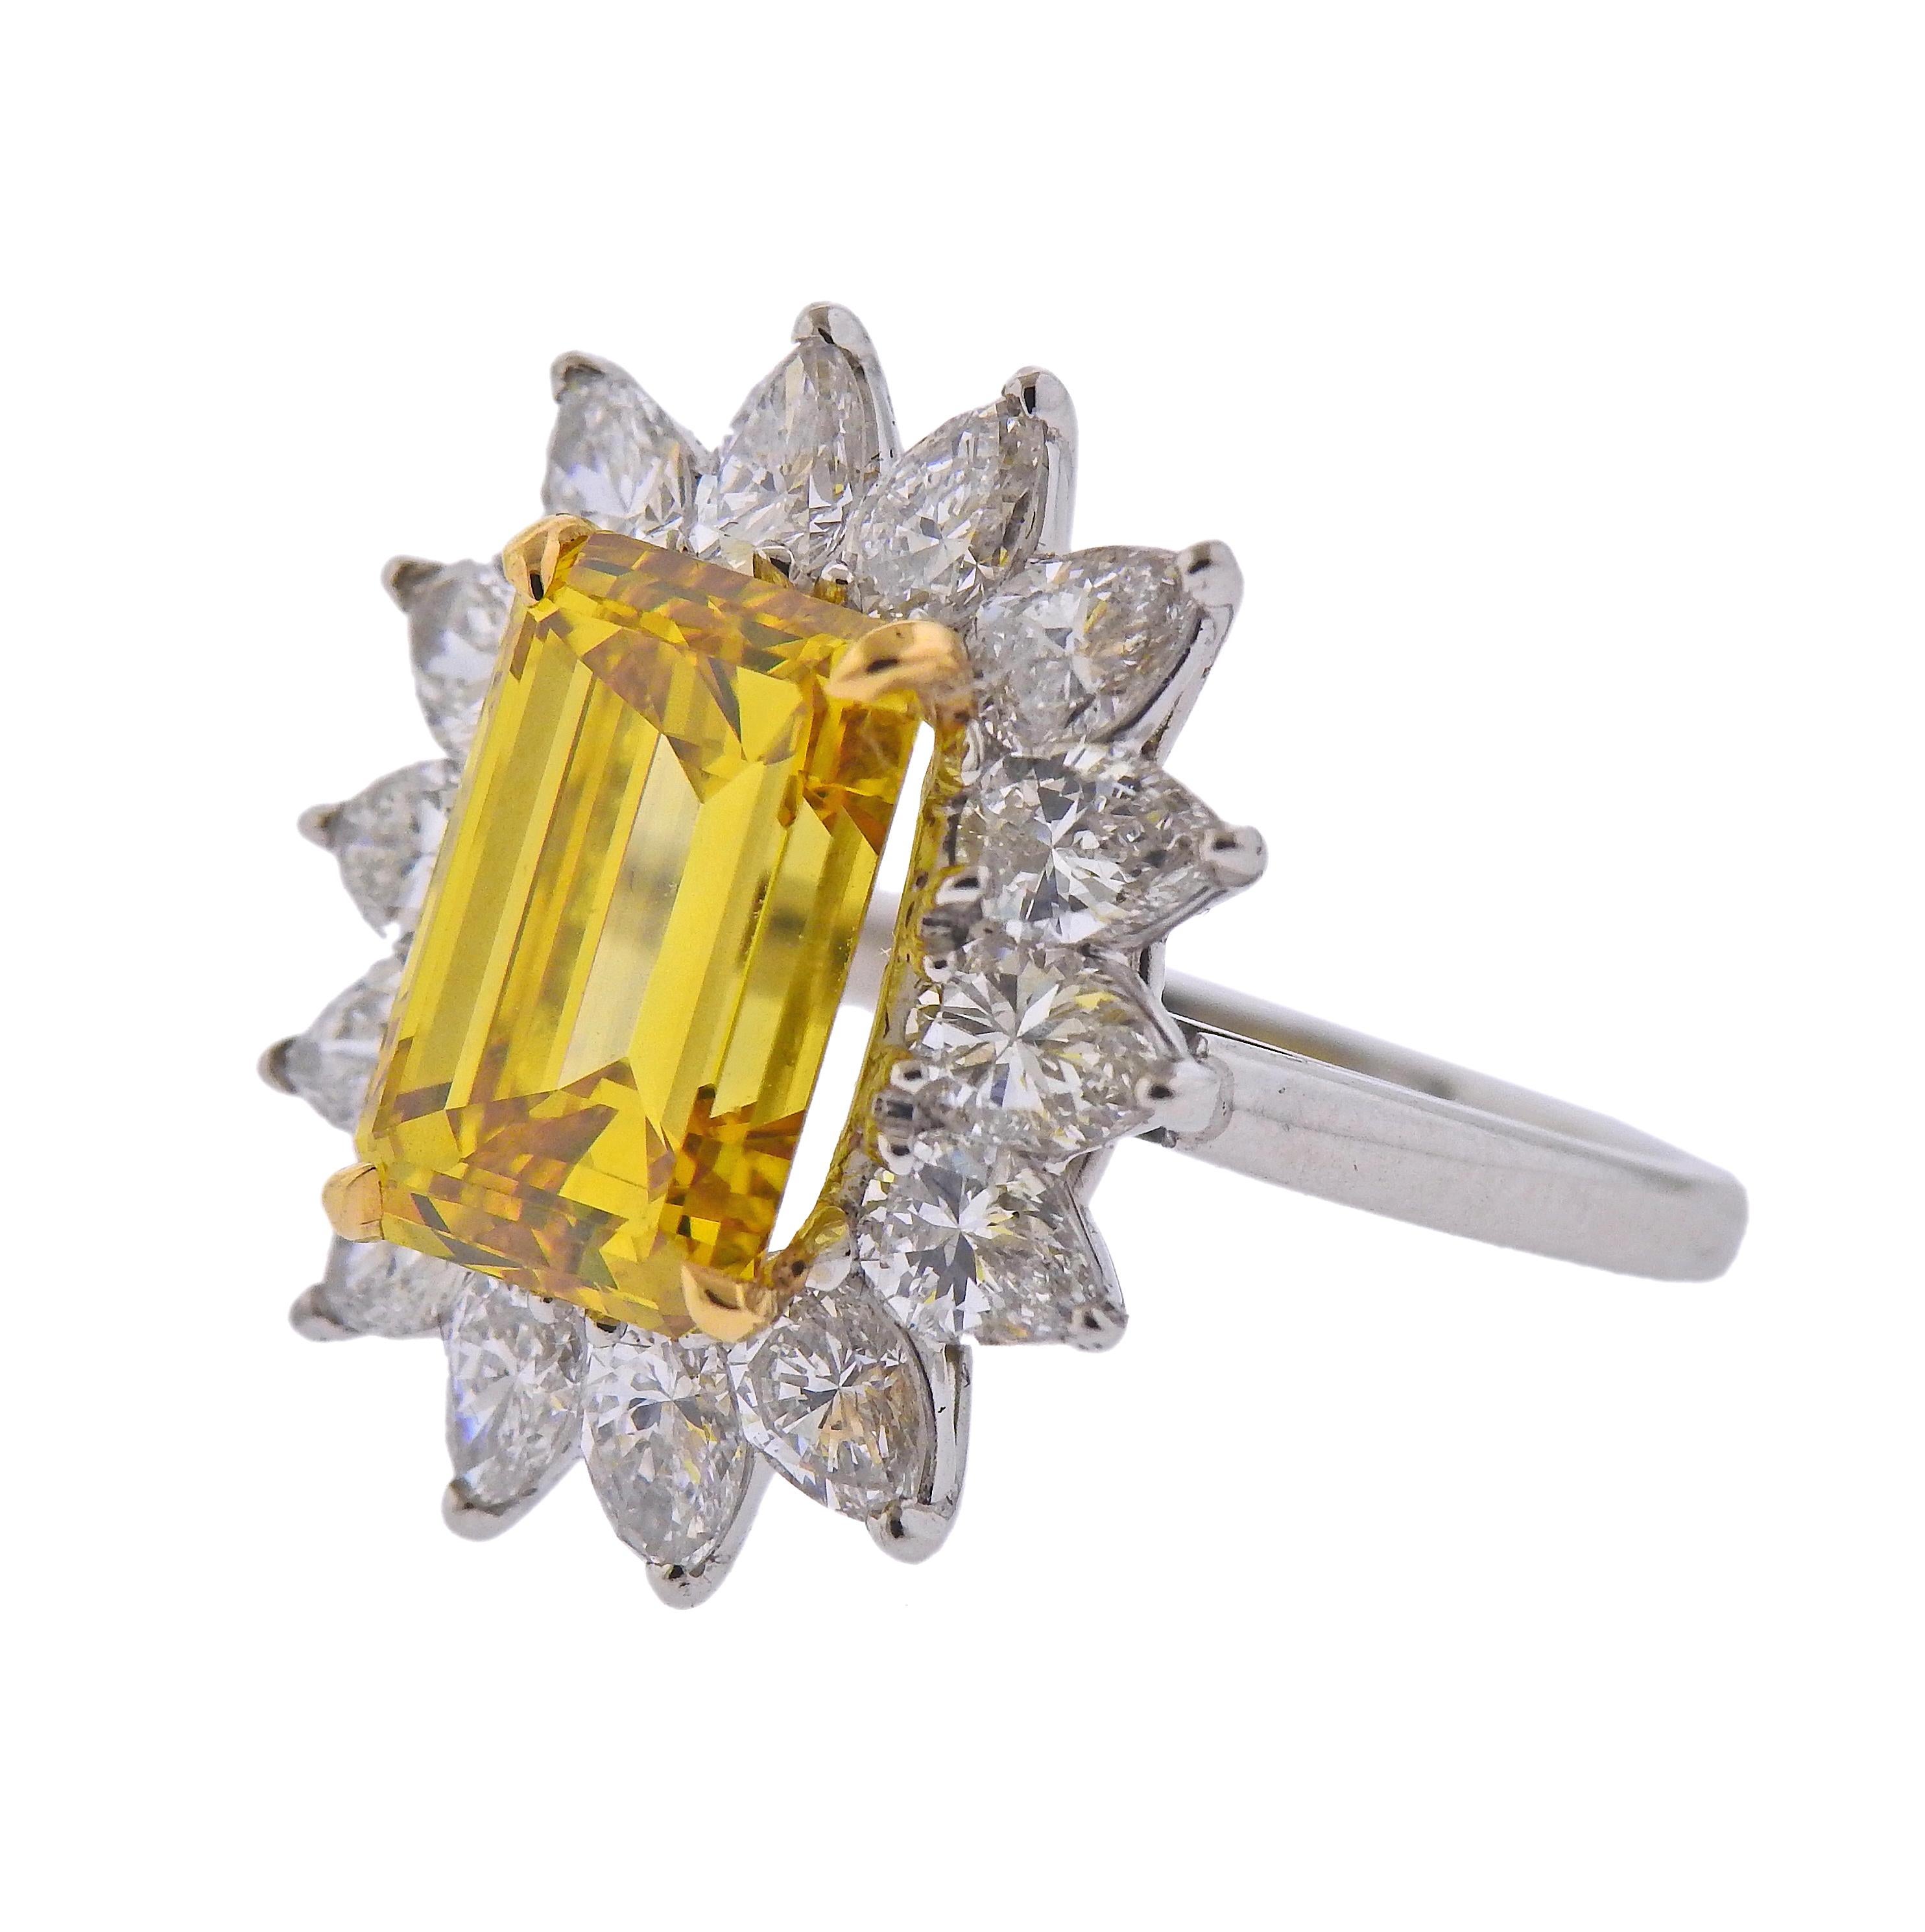 Diamant central de 5,23ct certifié par le GIA, de couleur jaune vif/VS2, taille émeraude, serti en platine, entouré d'environ 2,80ctw de diamants taille poire. Bague taille 7.25. La partie supérieure de l'anneau mesure 22 mm x 18 mm. Poids - 8,1